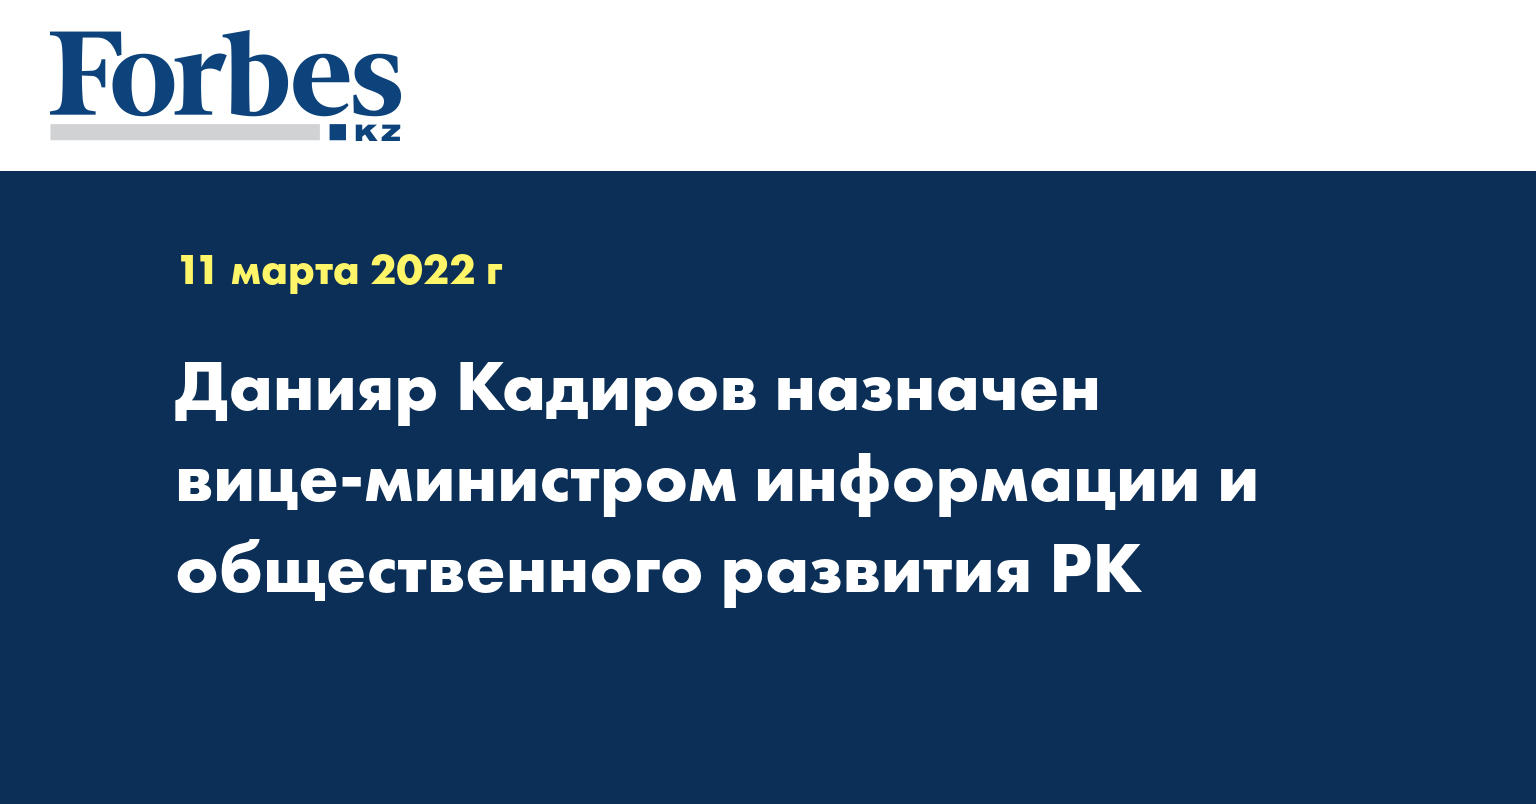 Данияр Кадиров назначен вице-министром информации и общественного развития РК